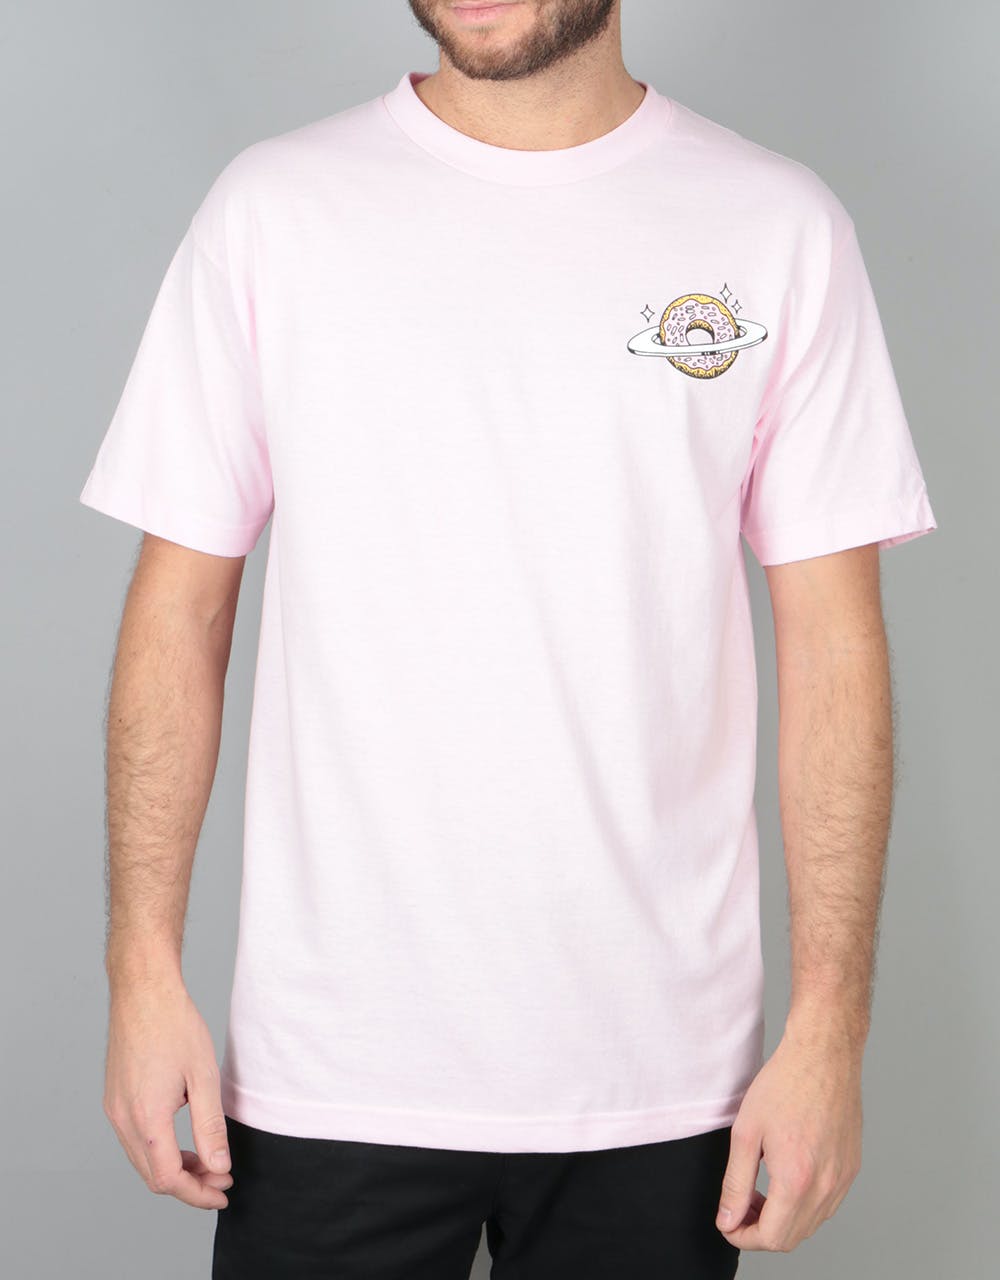 Skateboard Café Planet Donut T-Shirt - Pink